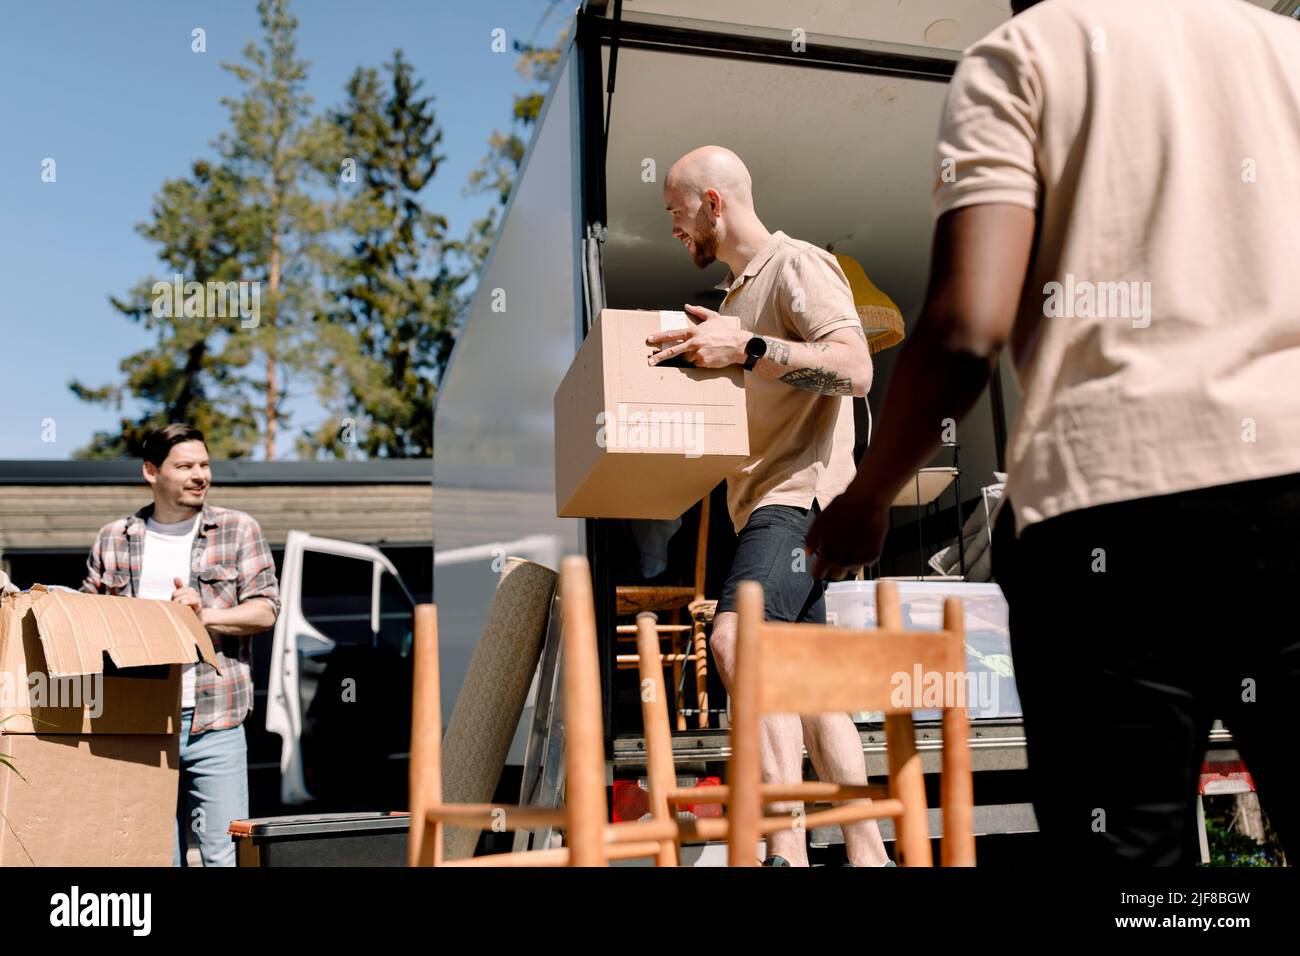 Les employés de la société de livraison aident l'homme à décharger les caisses du camion Banque D'Images